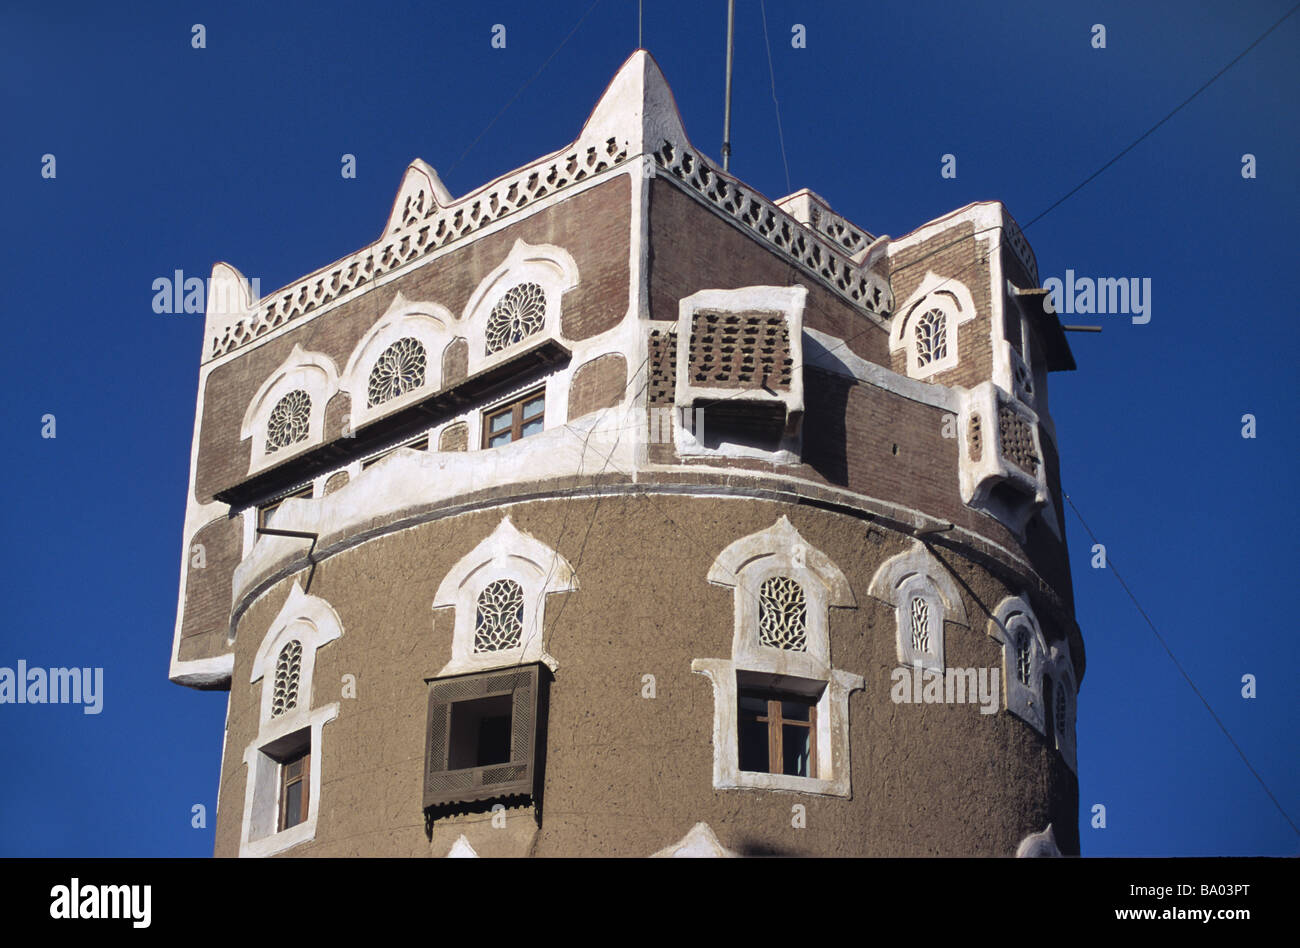 Chambre carrée sur le dessus de la tour ronde en brique crue Adobe Chambre avec fenêtres décorées, Sana'a ou San'a, la capitale du Yémen Banque D'Images